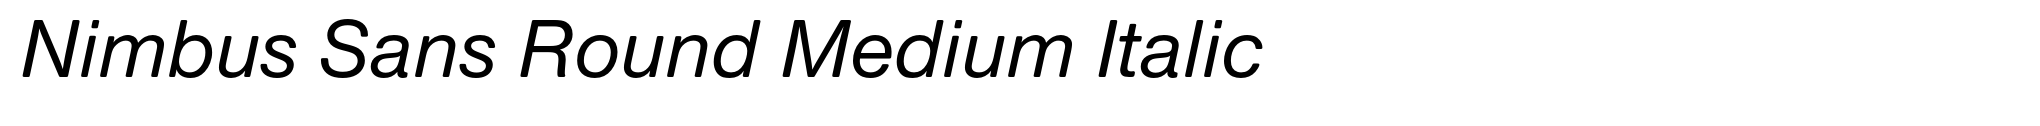 Nimbus Sans Round Medium Italic image